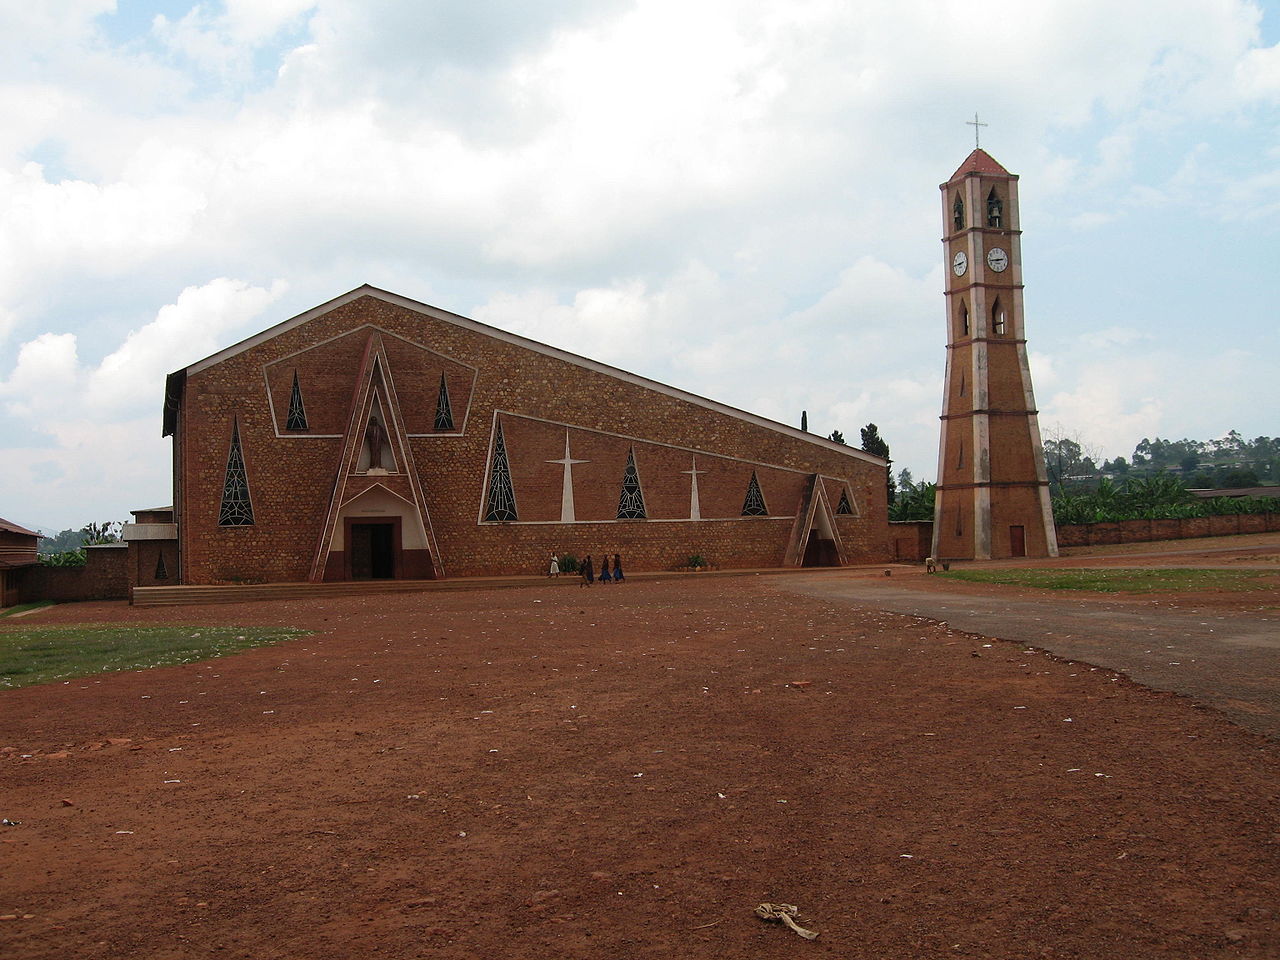 A church in Burundi, Africa